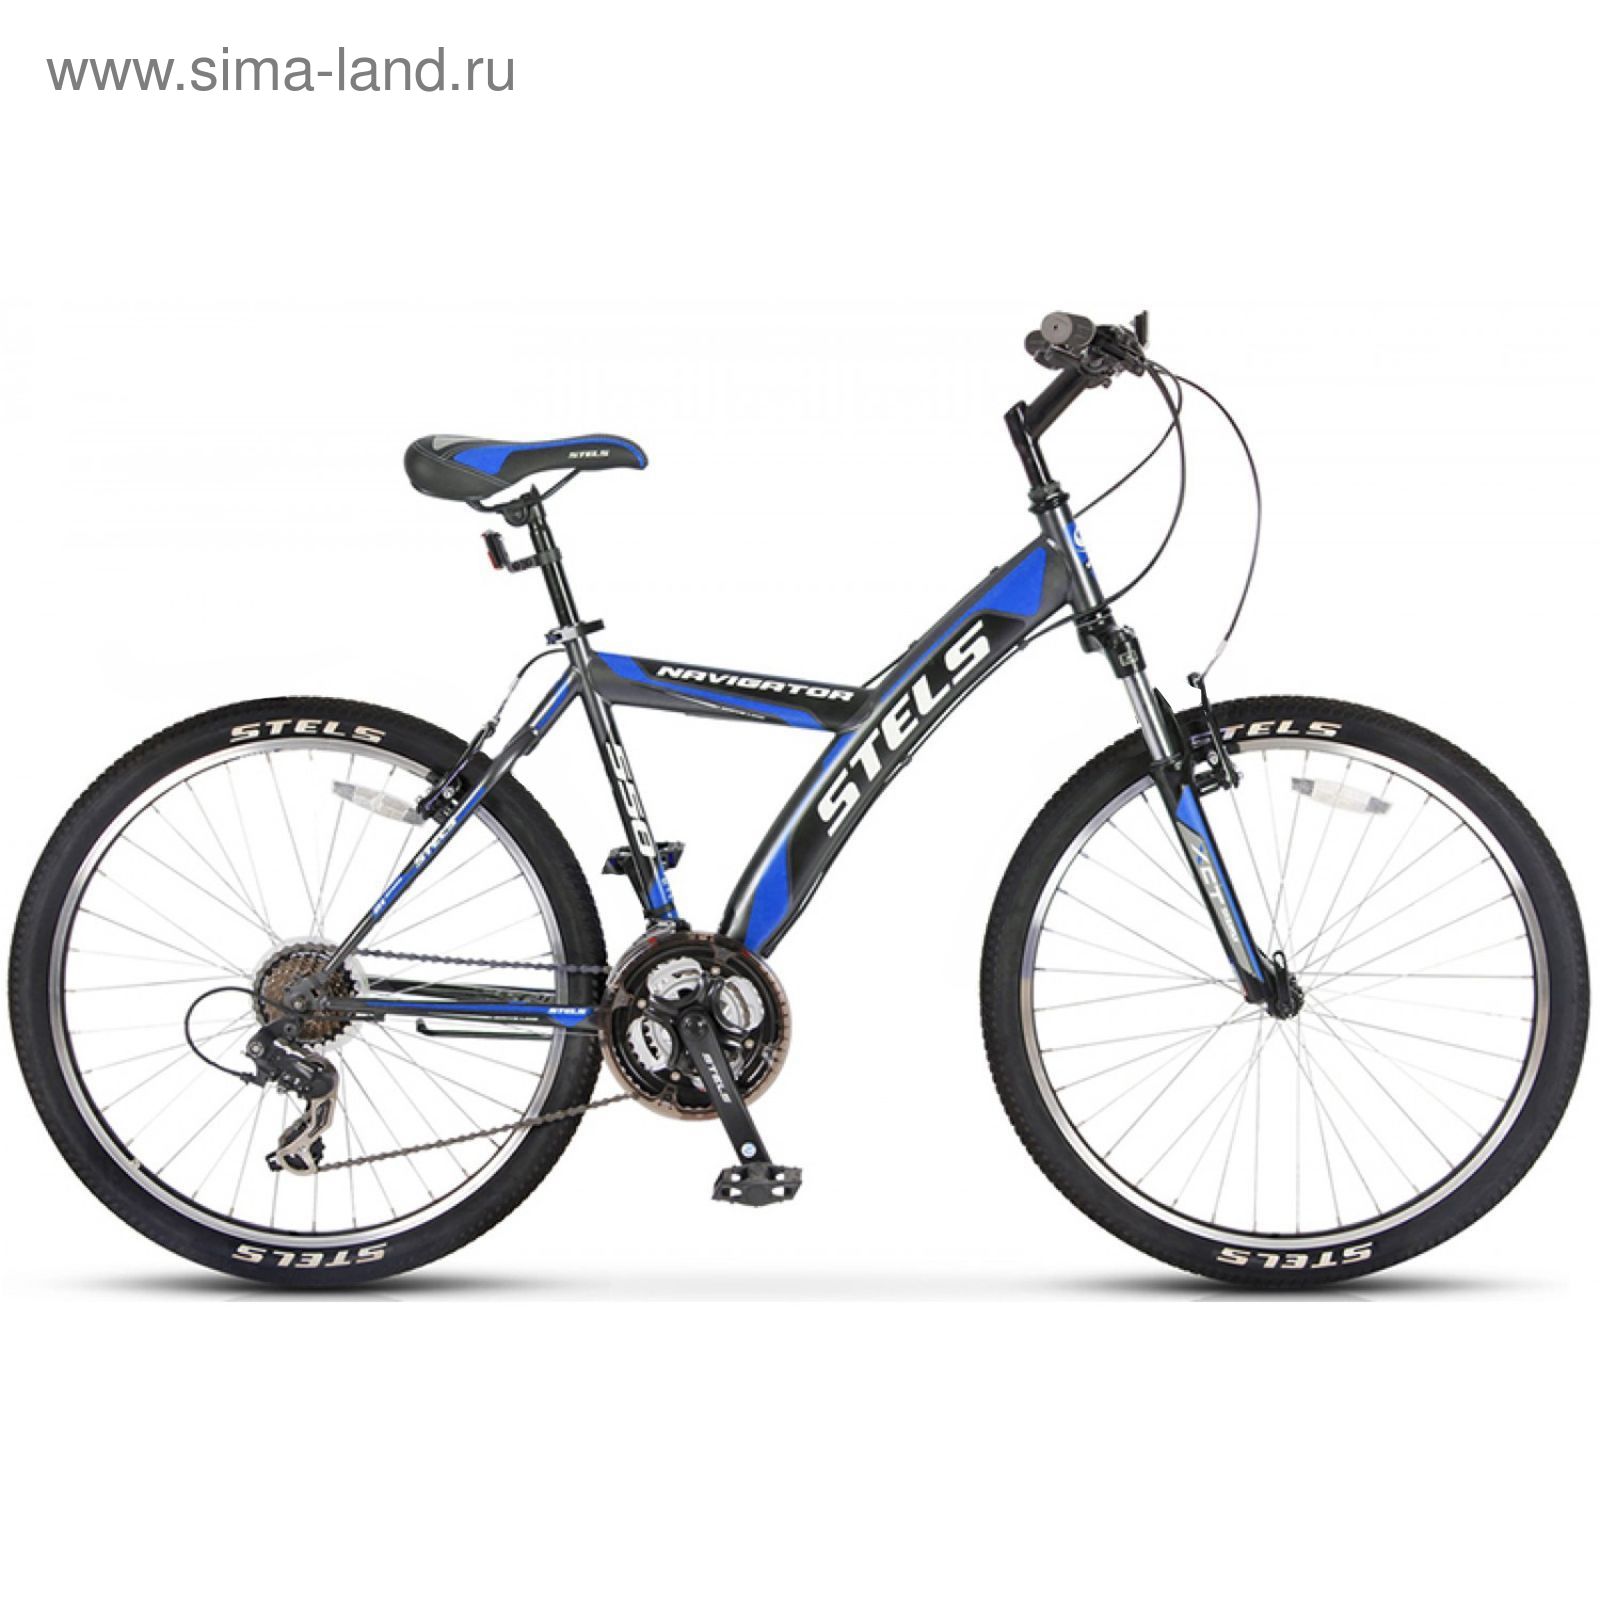 Велосипед 26" Stels Navigator-550 V, 2016, цвет серый/чёрный/синий, размер 18"